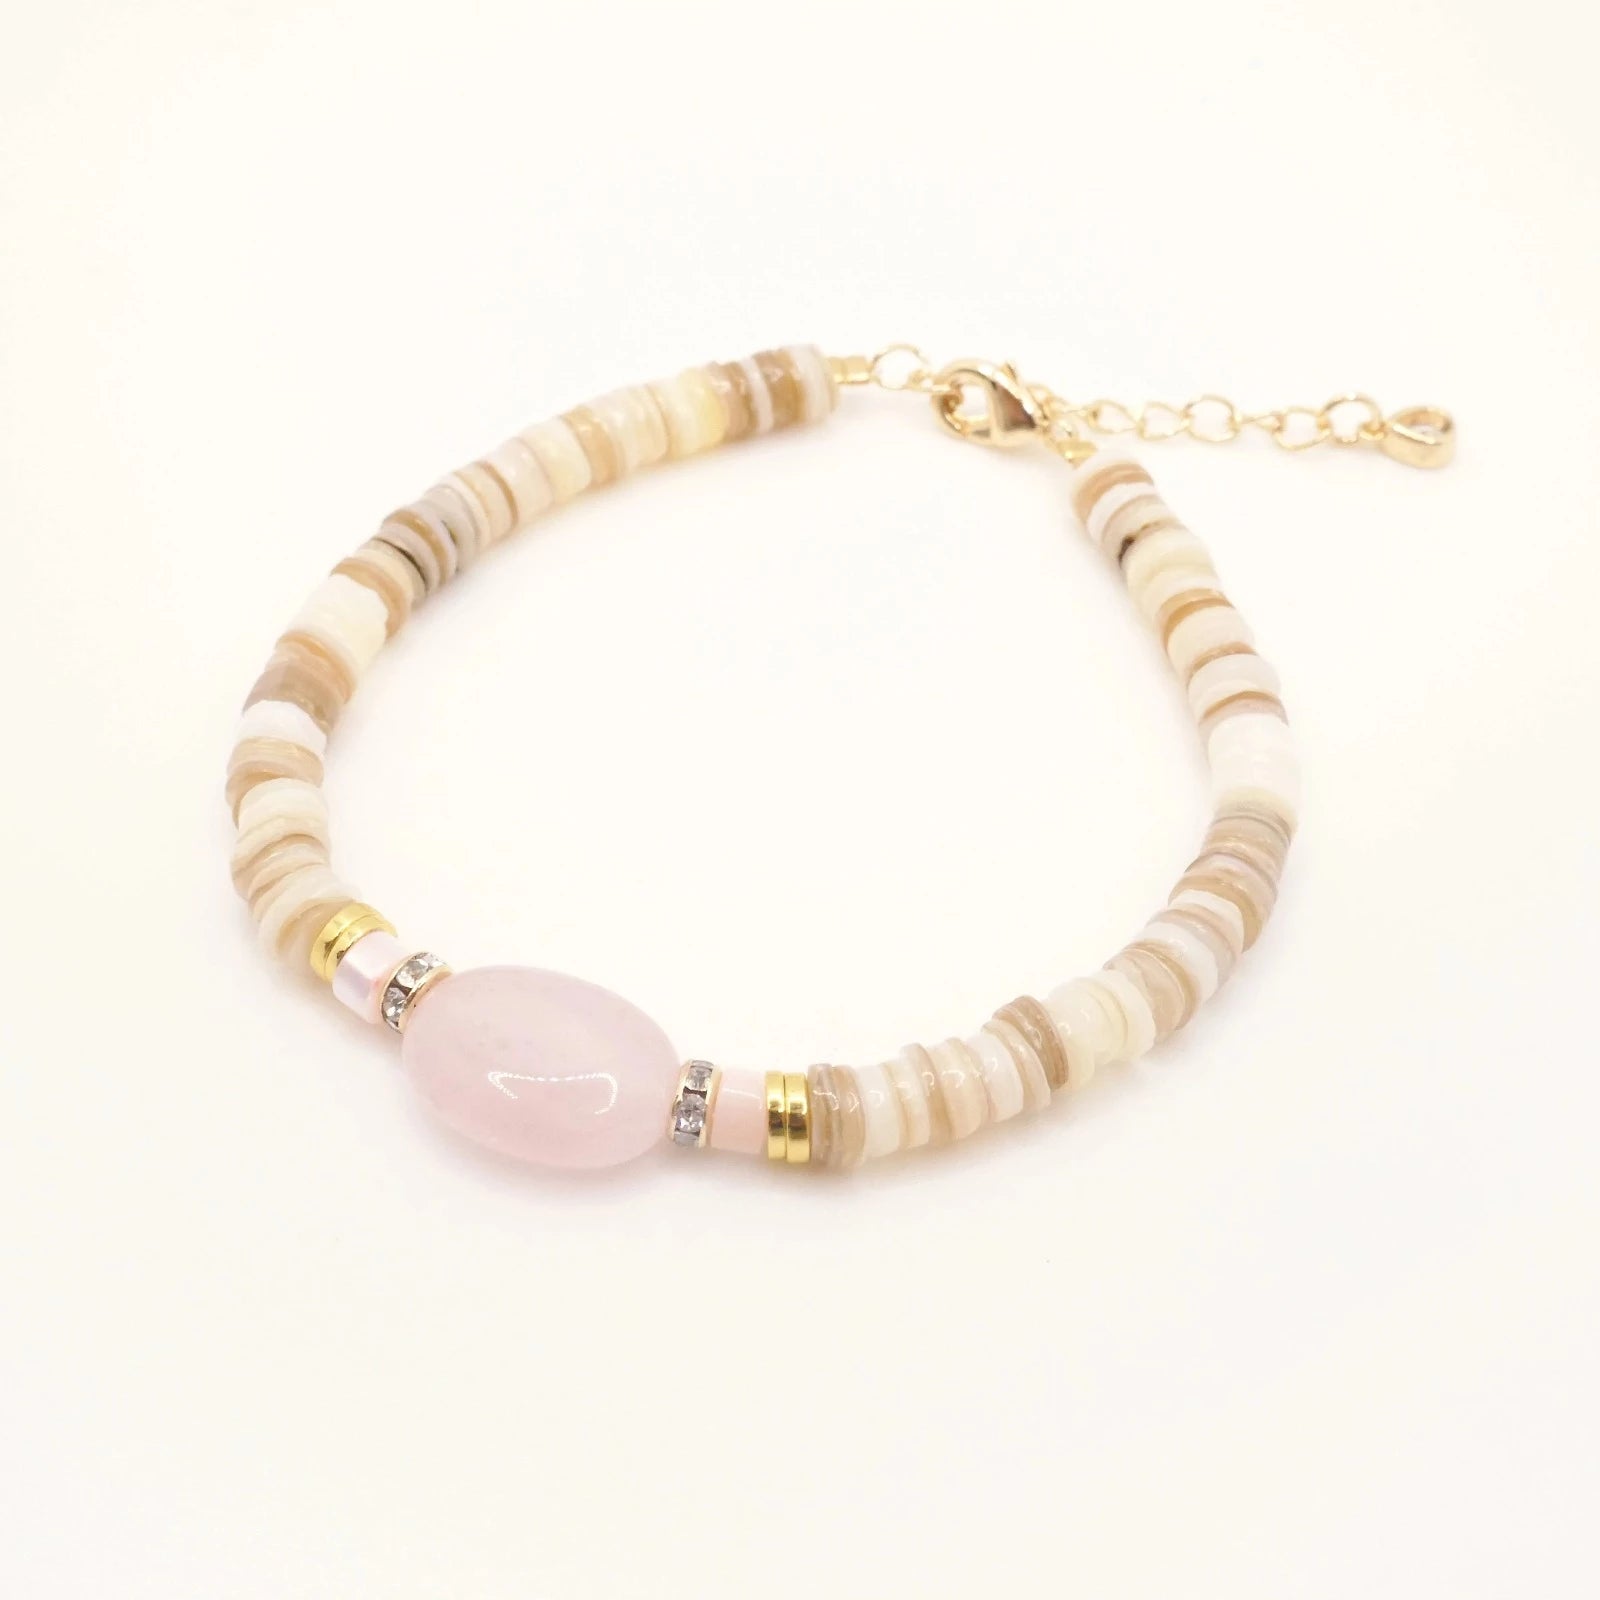 Bracelet en perles beiges et dorées et pierre semi-précieuse de Quartz rose